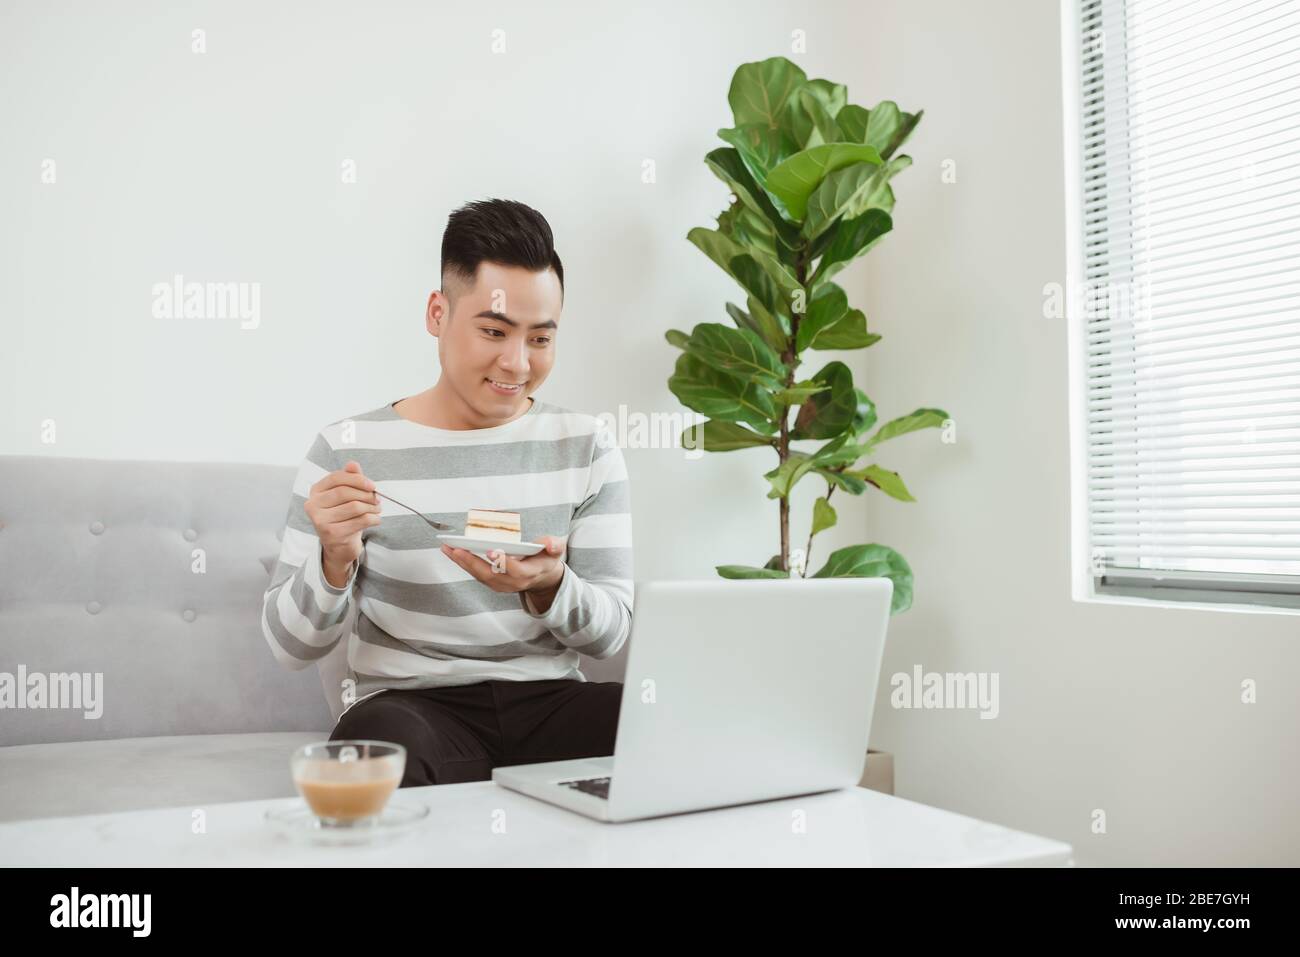 Jeune homme asiatique mangeant des gâteaux lorsqu'il est assis sur un canapé et à l'aide d'un ordinateur portable. Travailler à domicile. Banque D'Images